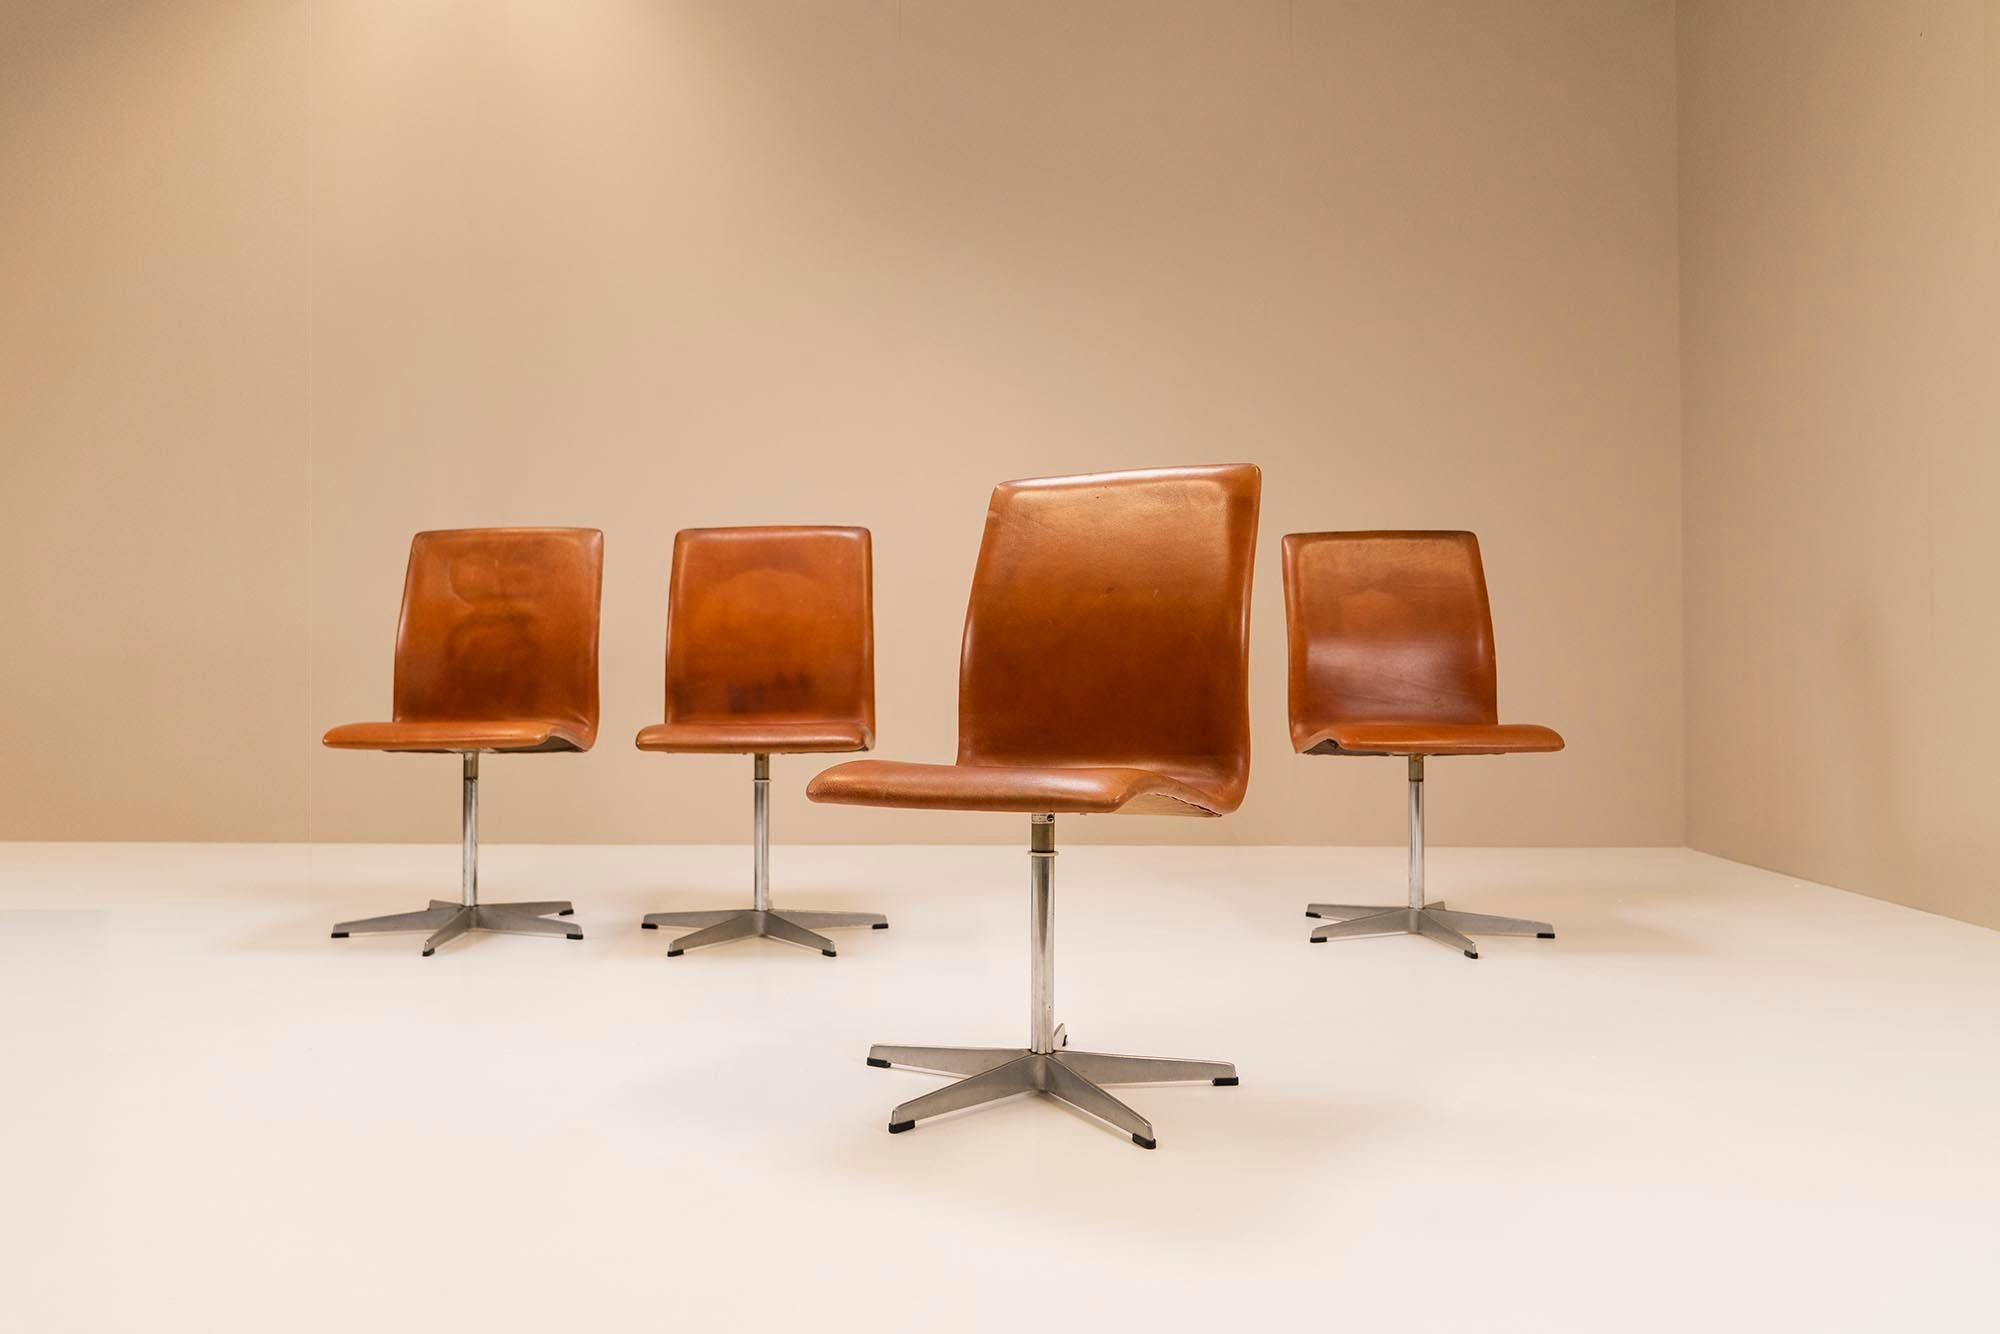 Satz von vier 'Oxford Chairs' Esstisch-Drehstühlen mit brauner Lederpolsterung und Metallgestell. Diese Stühle mit dem Modell 3171 wurden 1965 entworfen und zu einem späteren Zeitpunkt von Fritz Hansen ausgeführt. Die Stühle haben eine schöne Patina